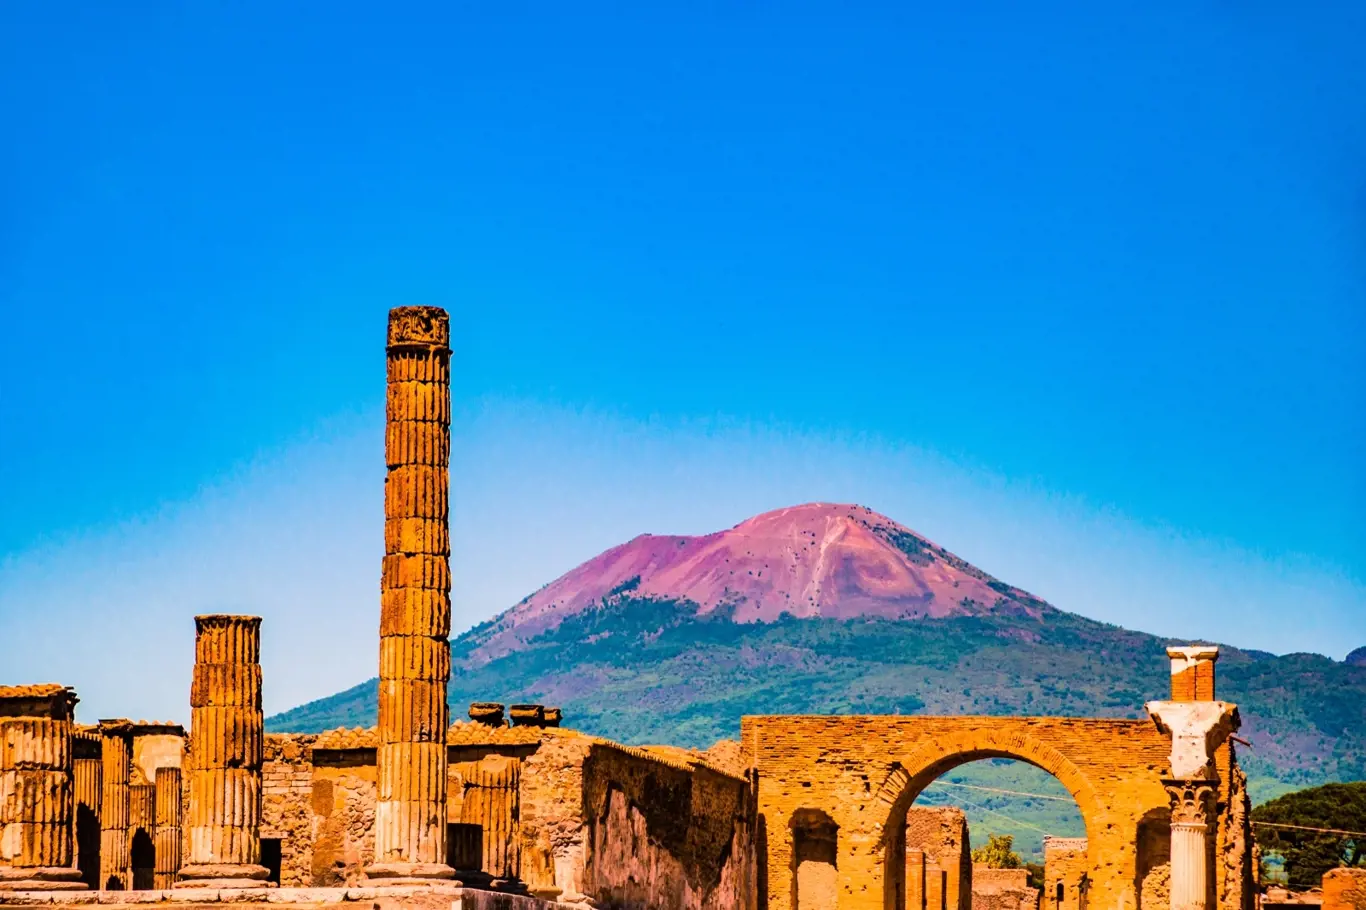 Slavné město Pompeje nedaleko Neapole bylo zcela zničeno erupcí sopky Vesuv. Jedna z hlavních turistických atrakcí v Itálii.